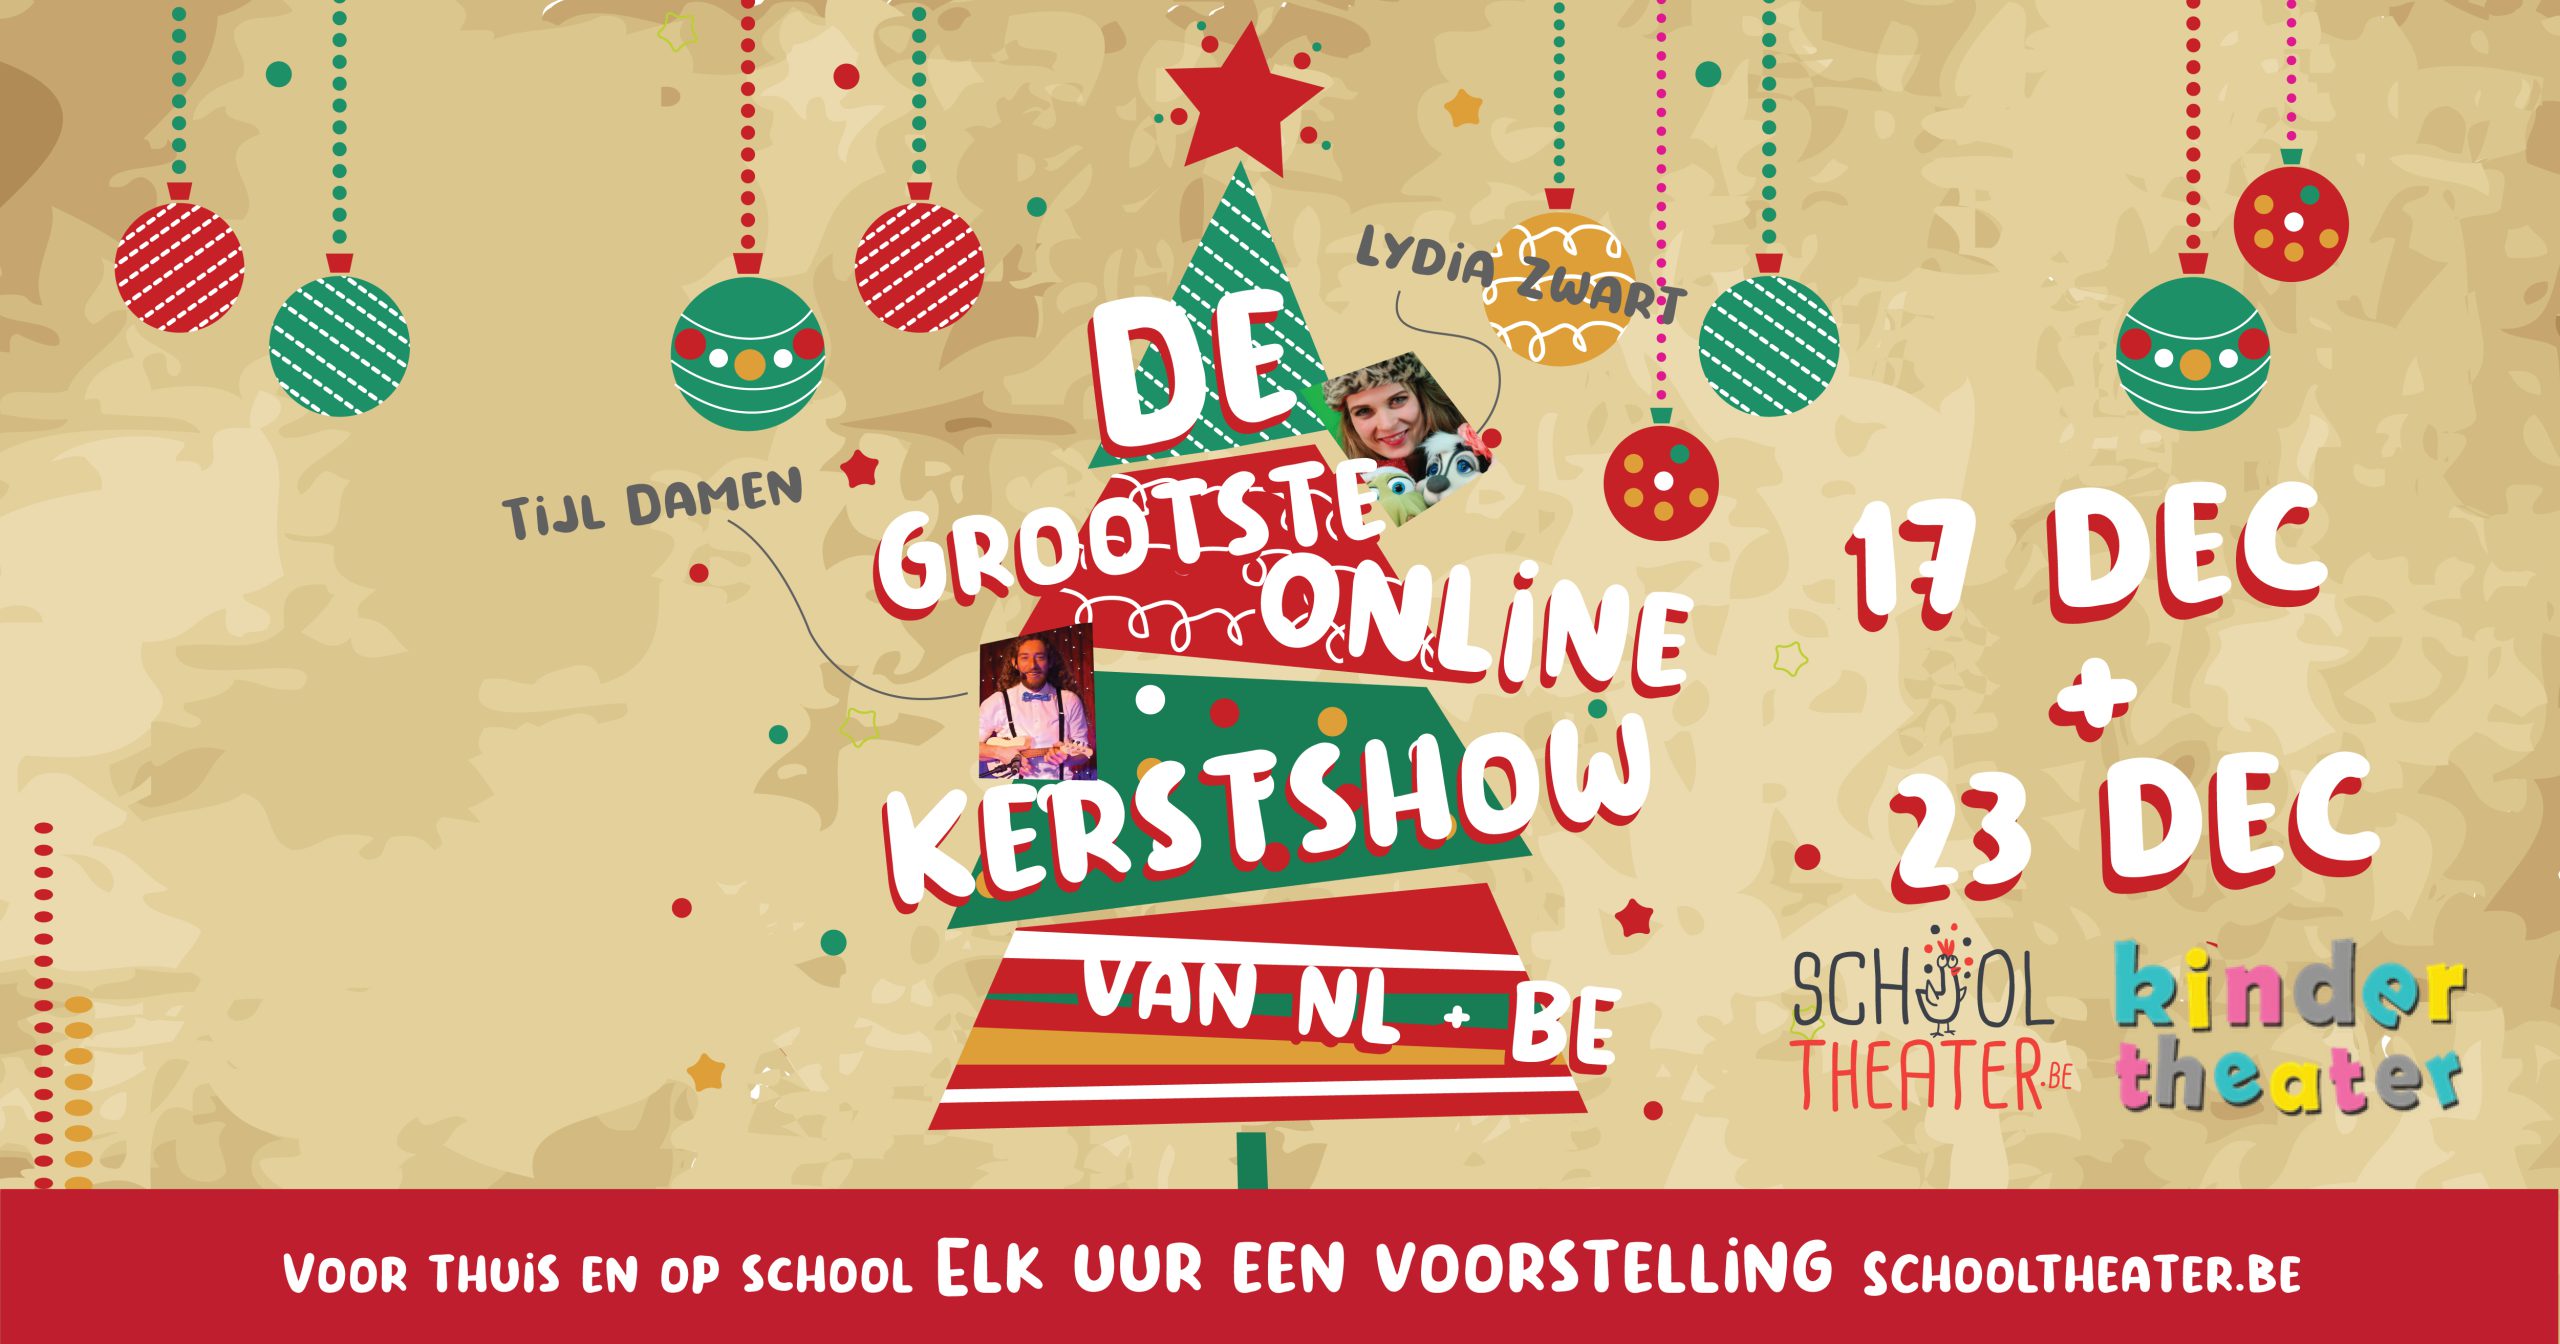 de grootste ONLINE kerstshow van Nederland & België